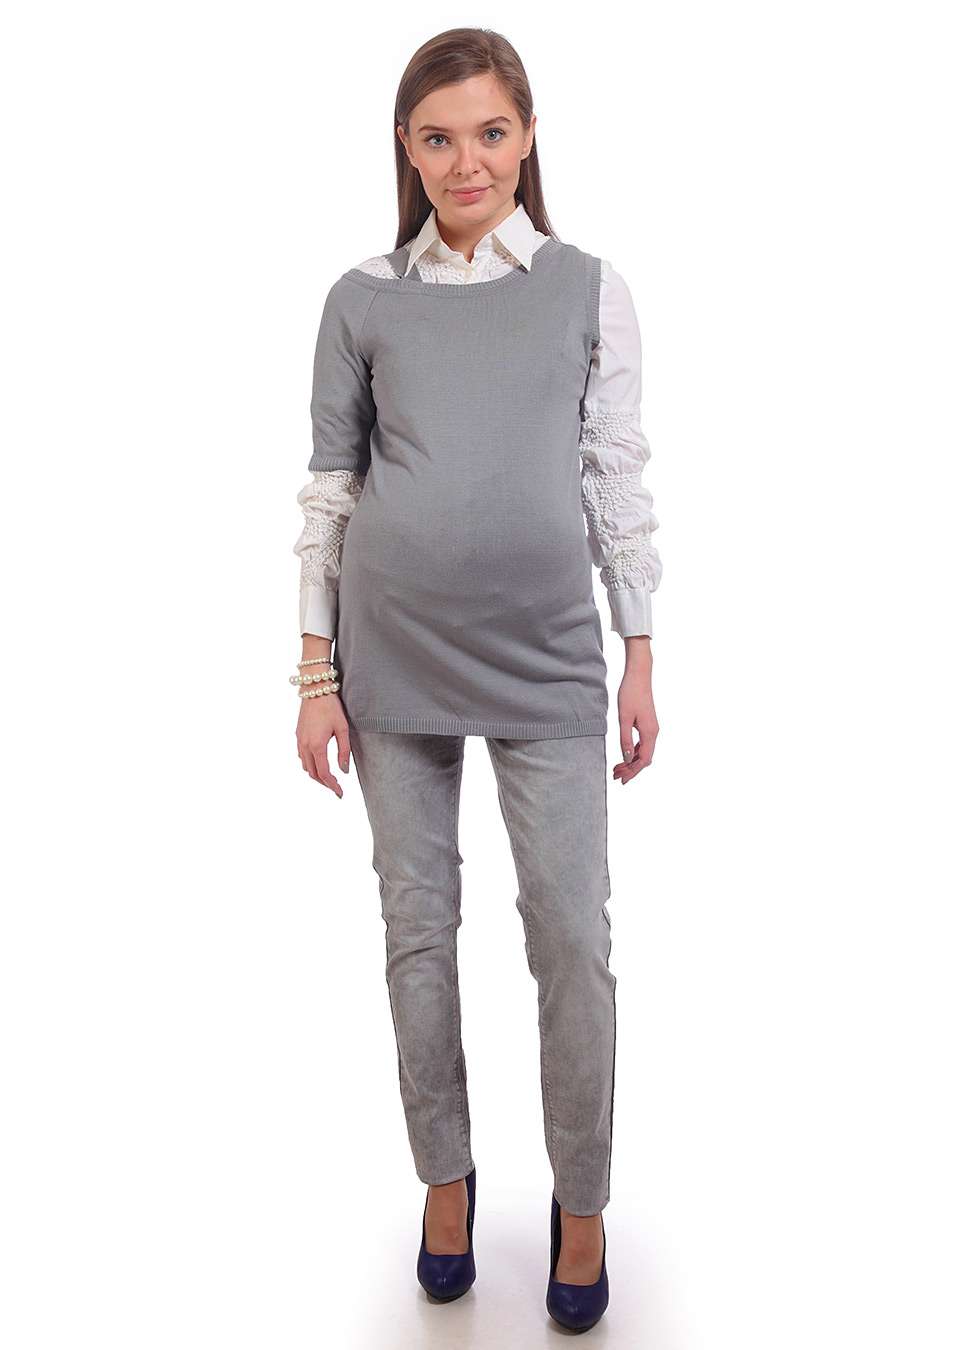 Вязанная одежда для будущих мам.